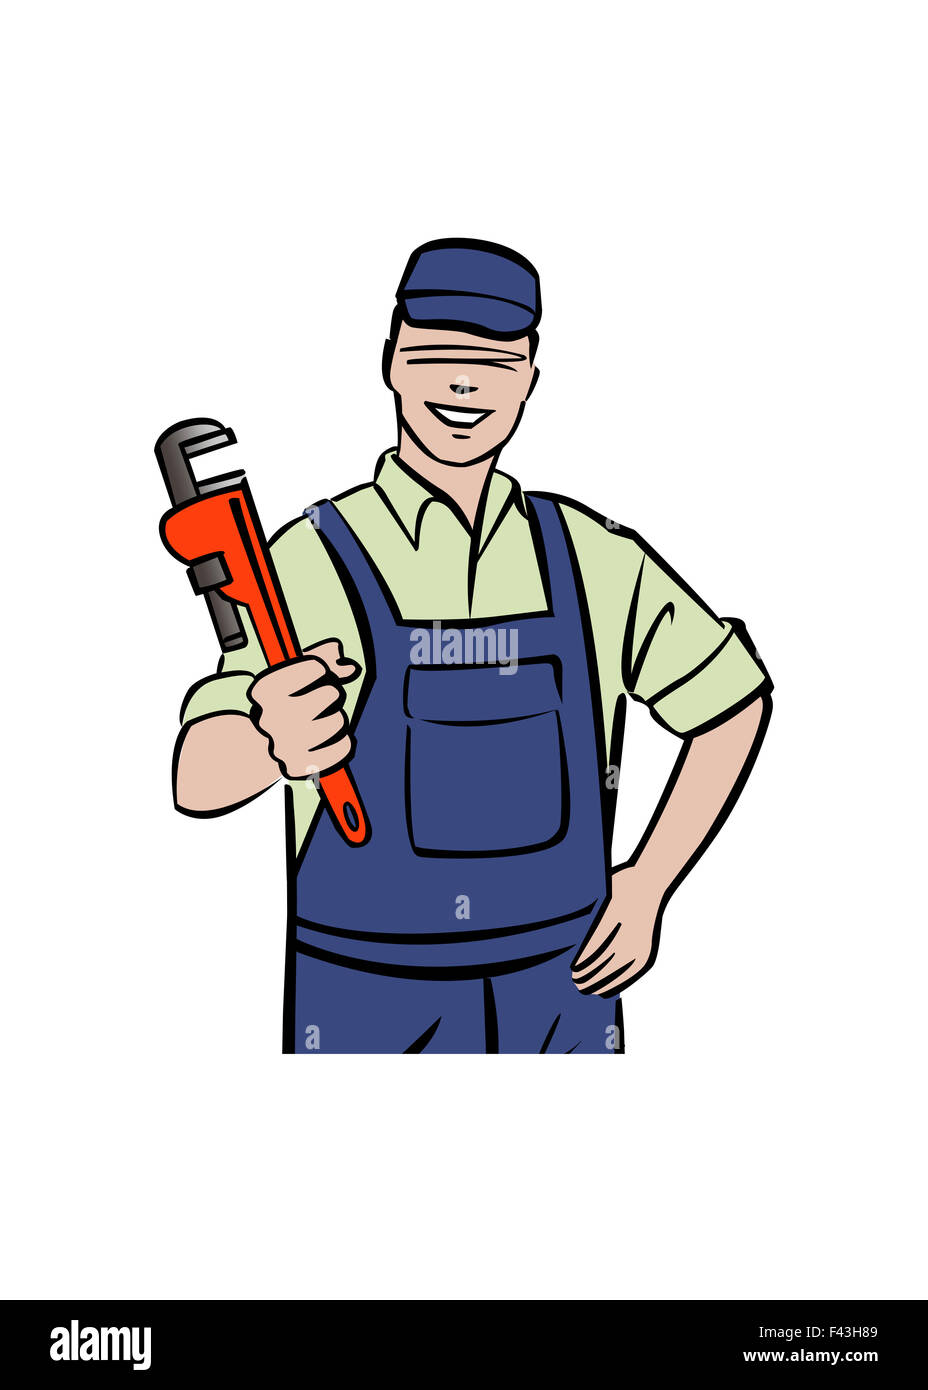 Illustrazione di plumber tenendo la chiave Foto Stock